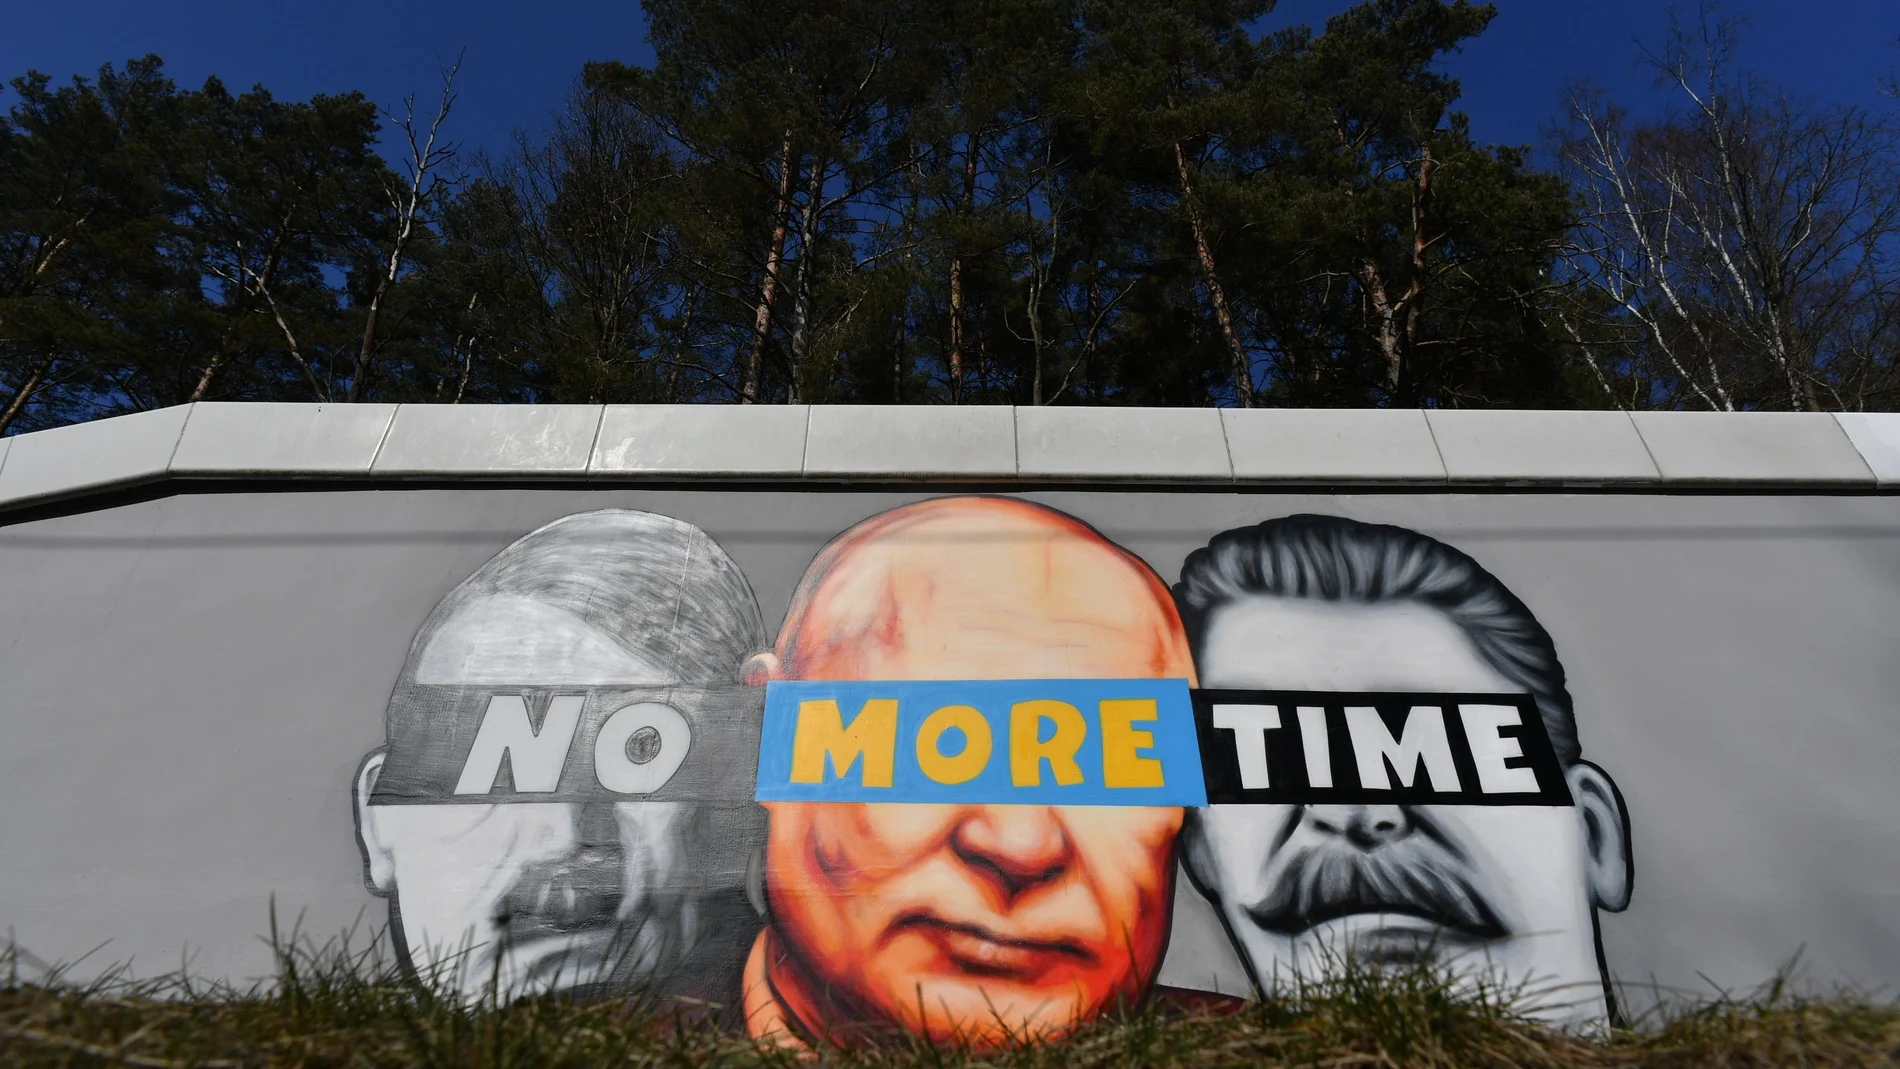 Un mural en Polonia compara a Putin con Hitler y Stalin